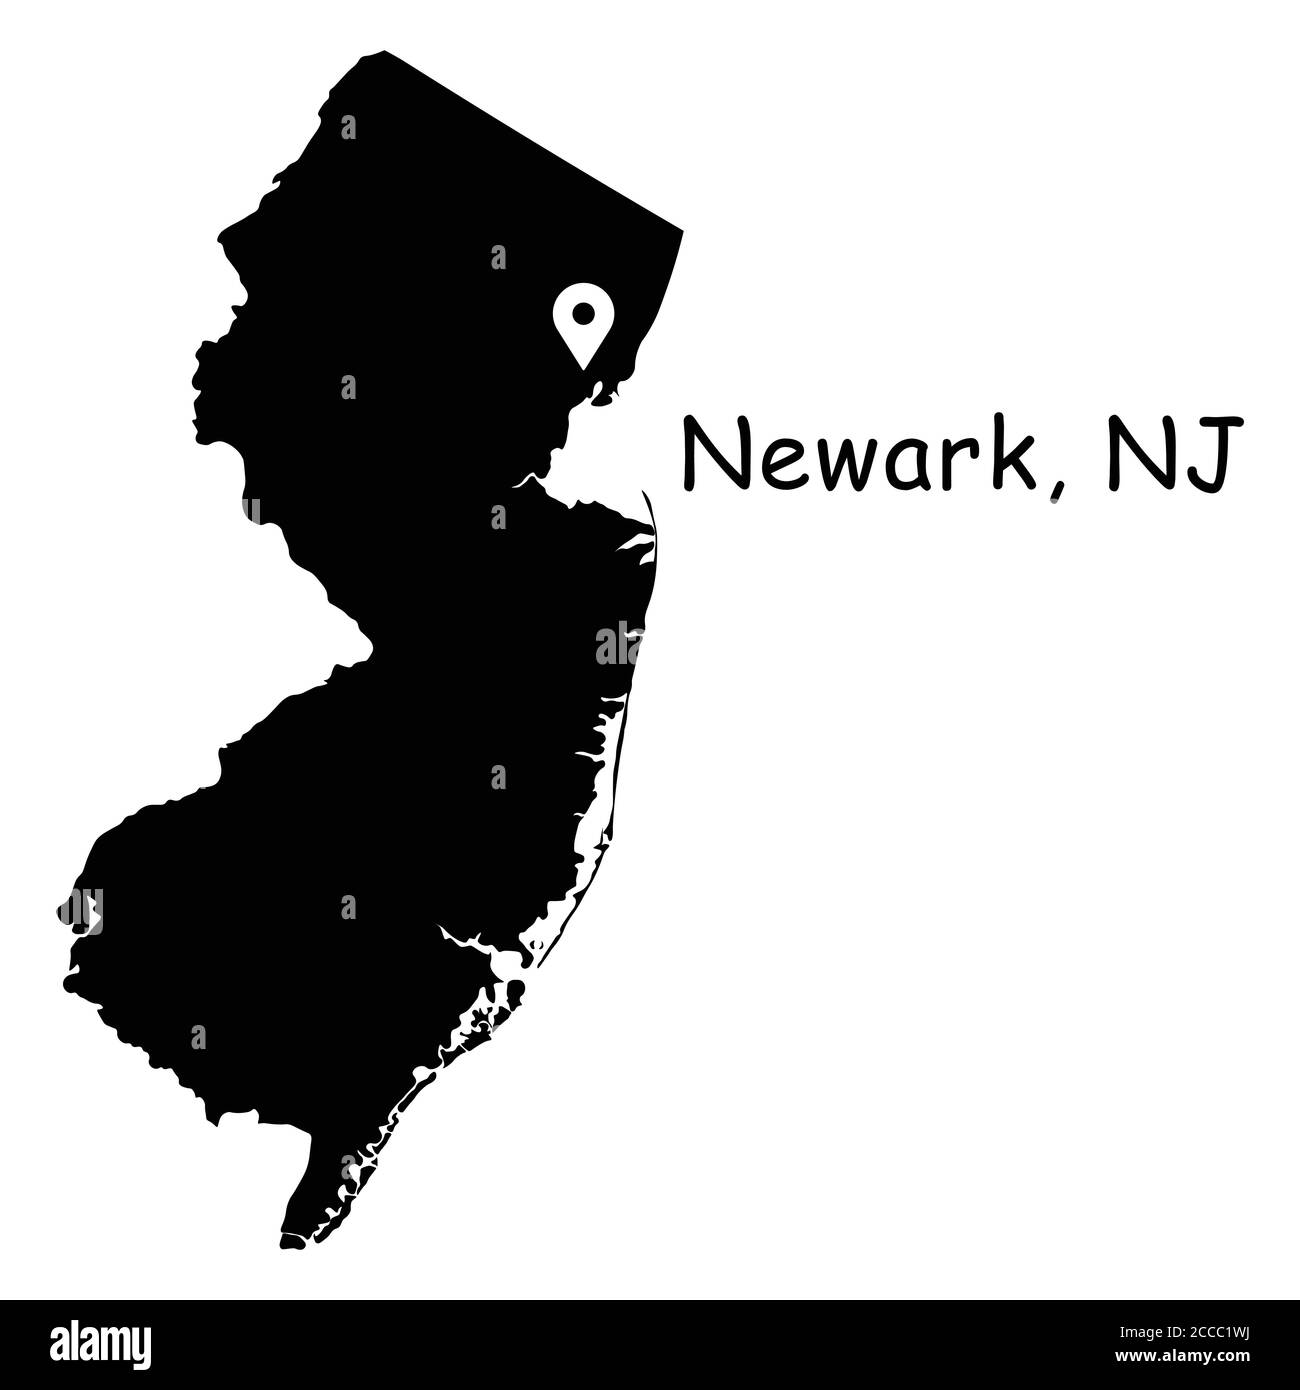 Newark en el mapa del estado de Nueva Jersey. Mapa detallado del estado de NJ con PIN de ubicación en la ciudad de Newark. Mapa vectorial de silueta negra aislado sobre fondo blanco. Ilustración del Vector